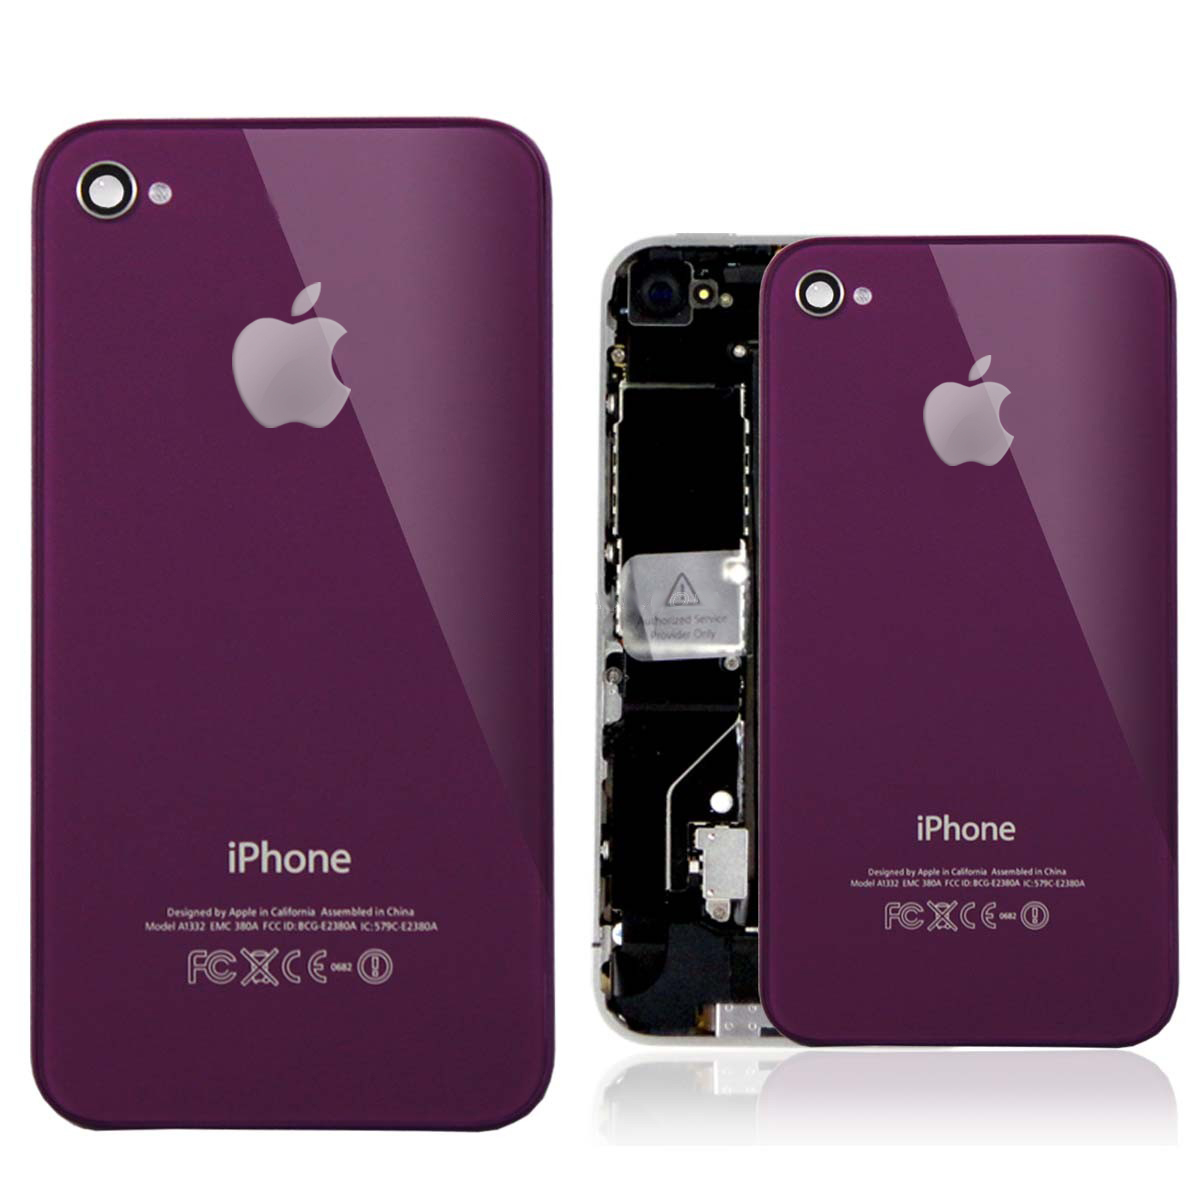 iPhone 4 Backcover - резервен заден капак за iPhone 4 (лилав)